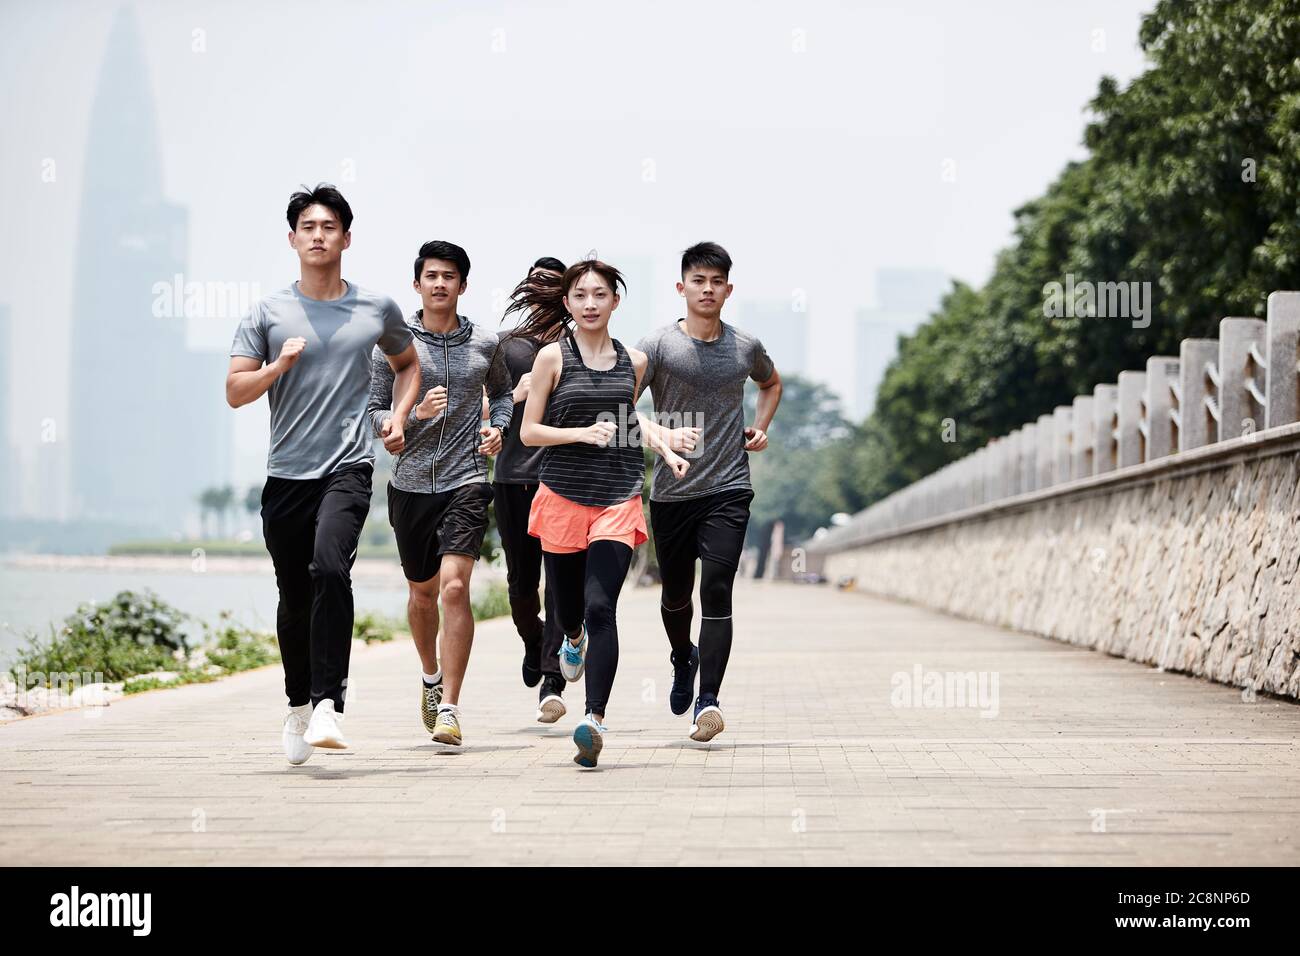 Gruppe von fünf jungen asiatischen erwachsenen Männern und Frauen laufen Training im Freien Stockfoto